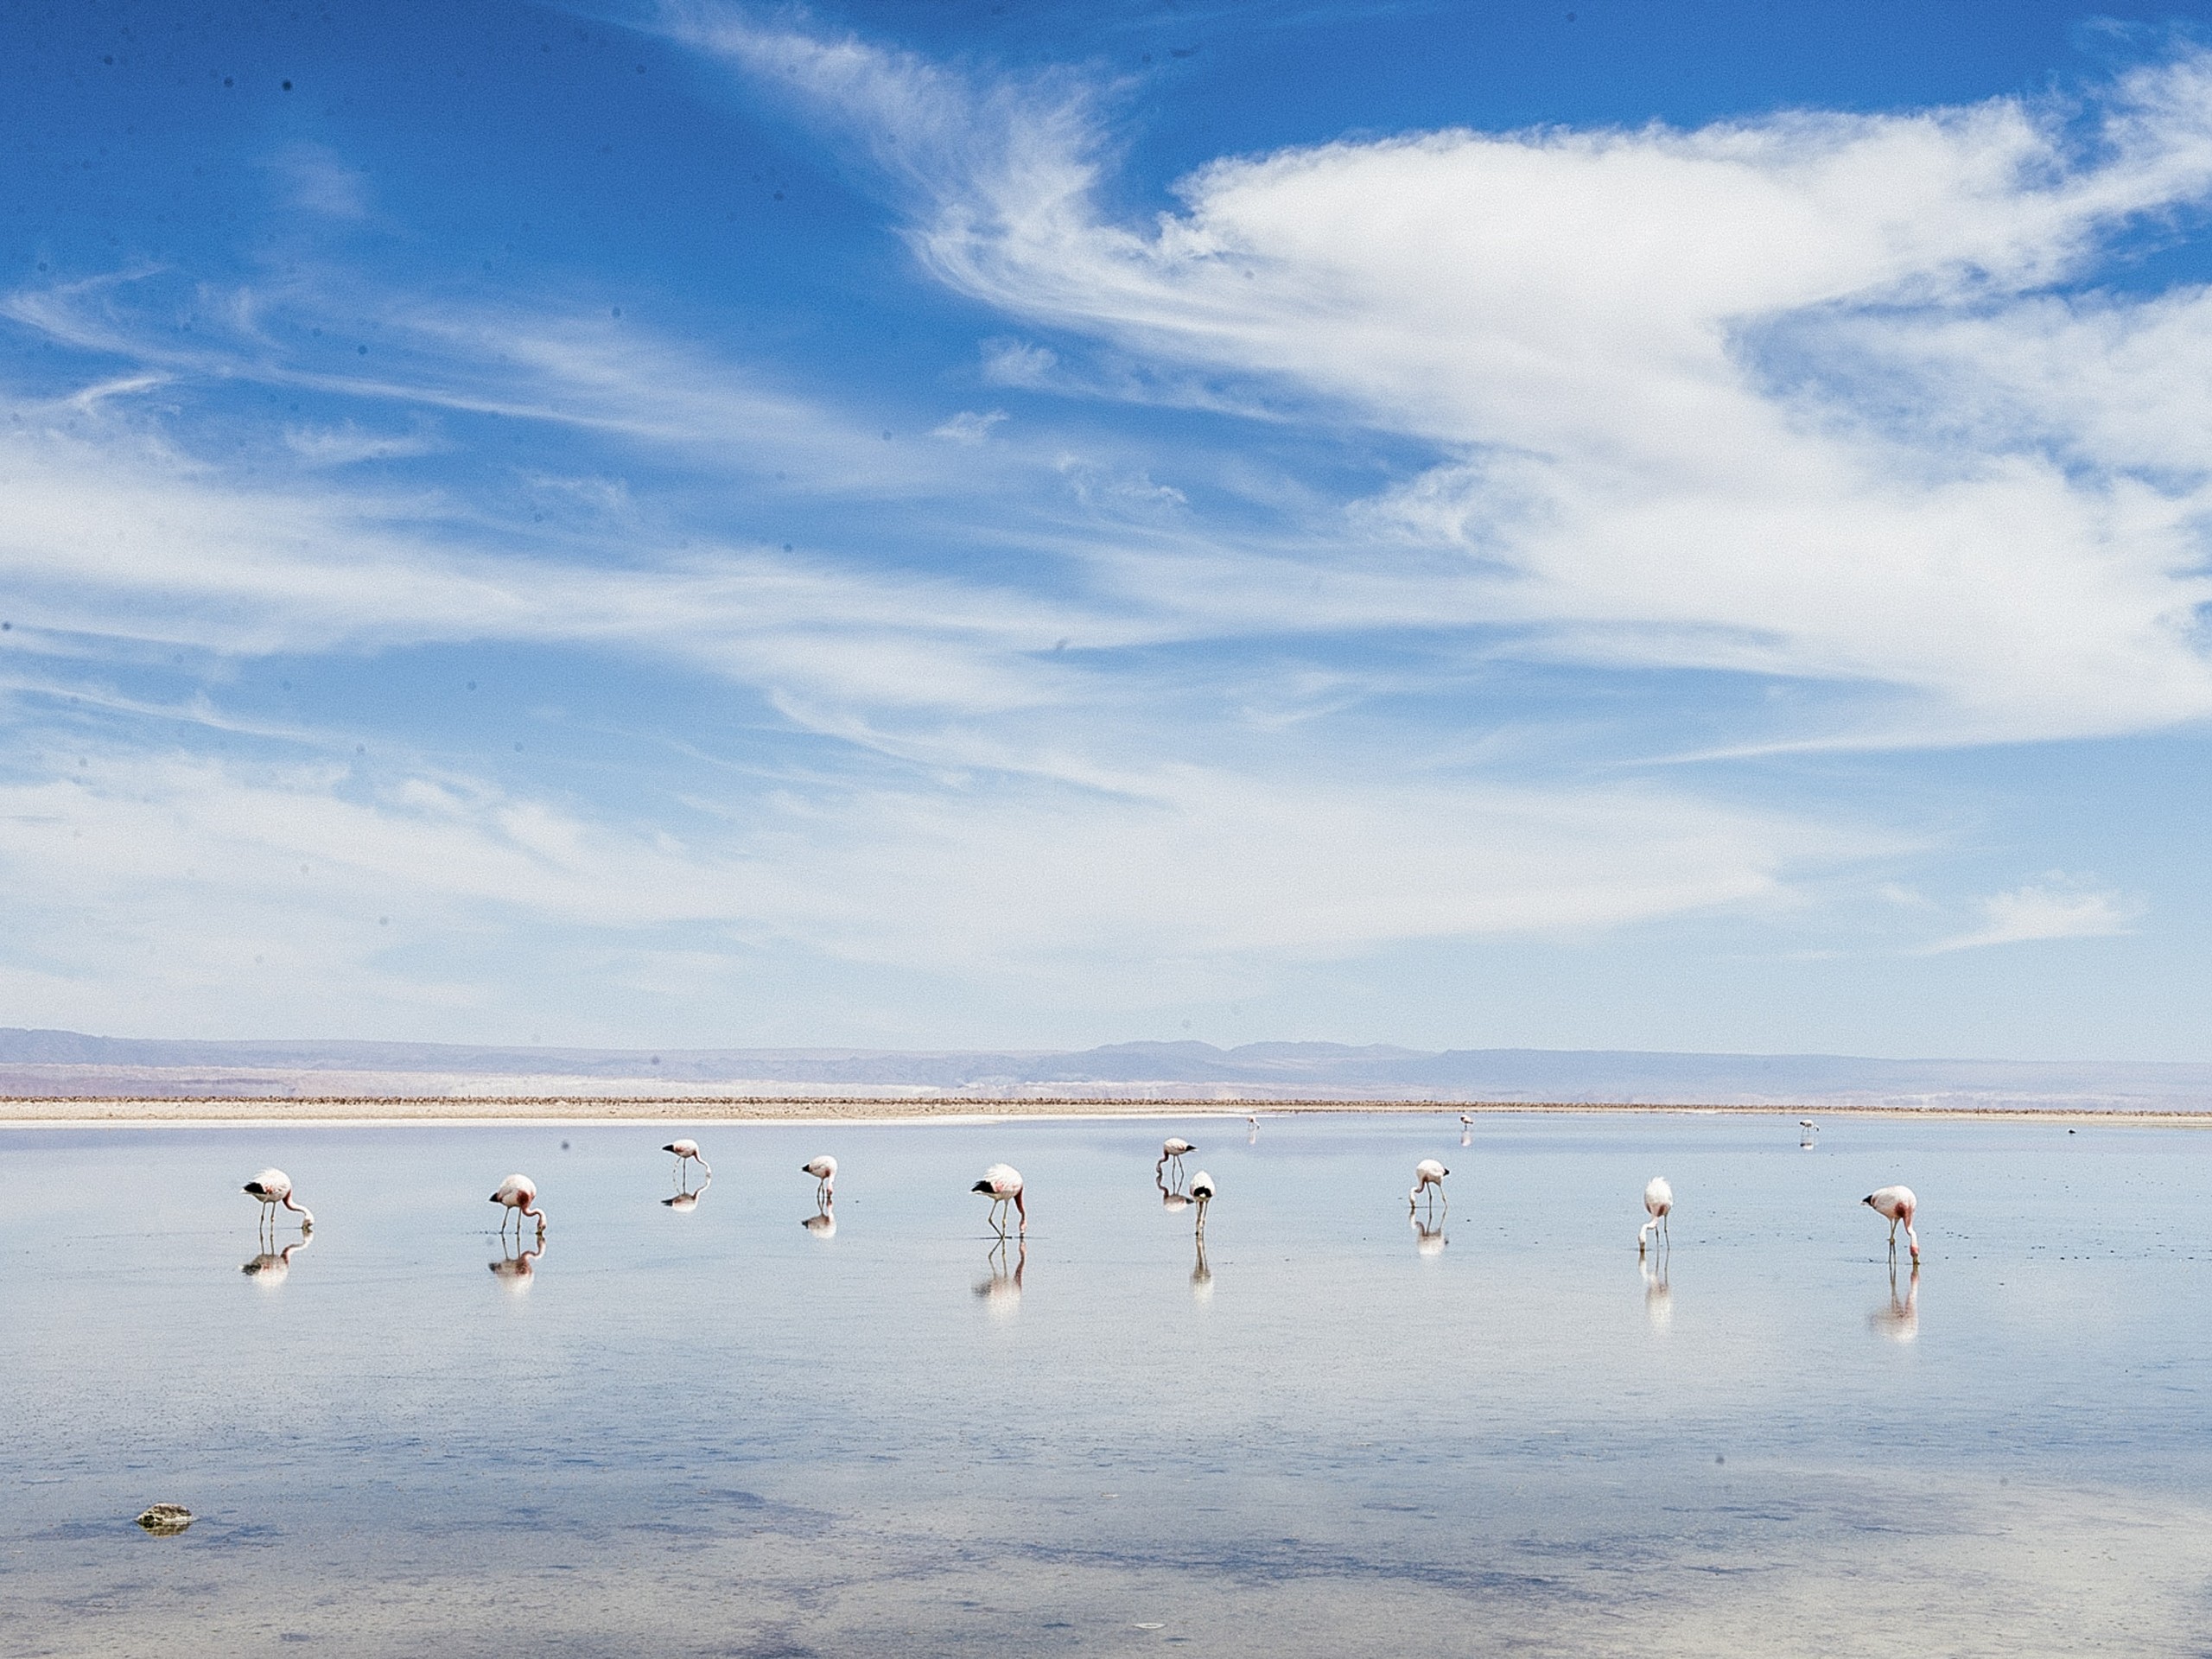 Flamingoes in Atacama Desert, Chile